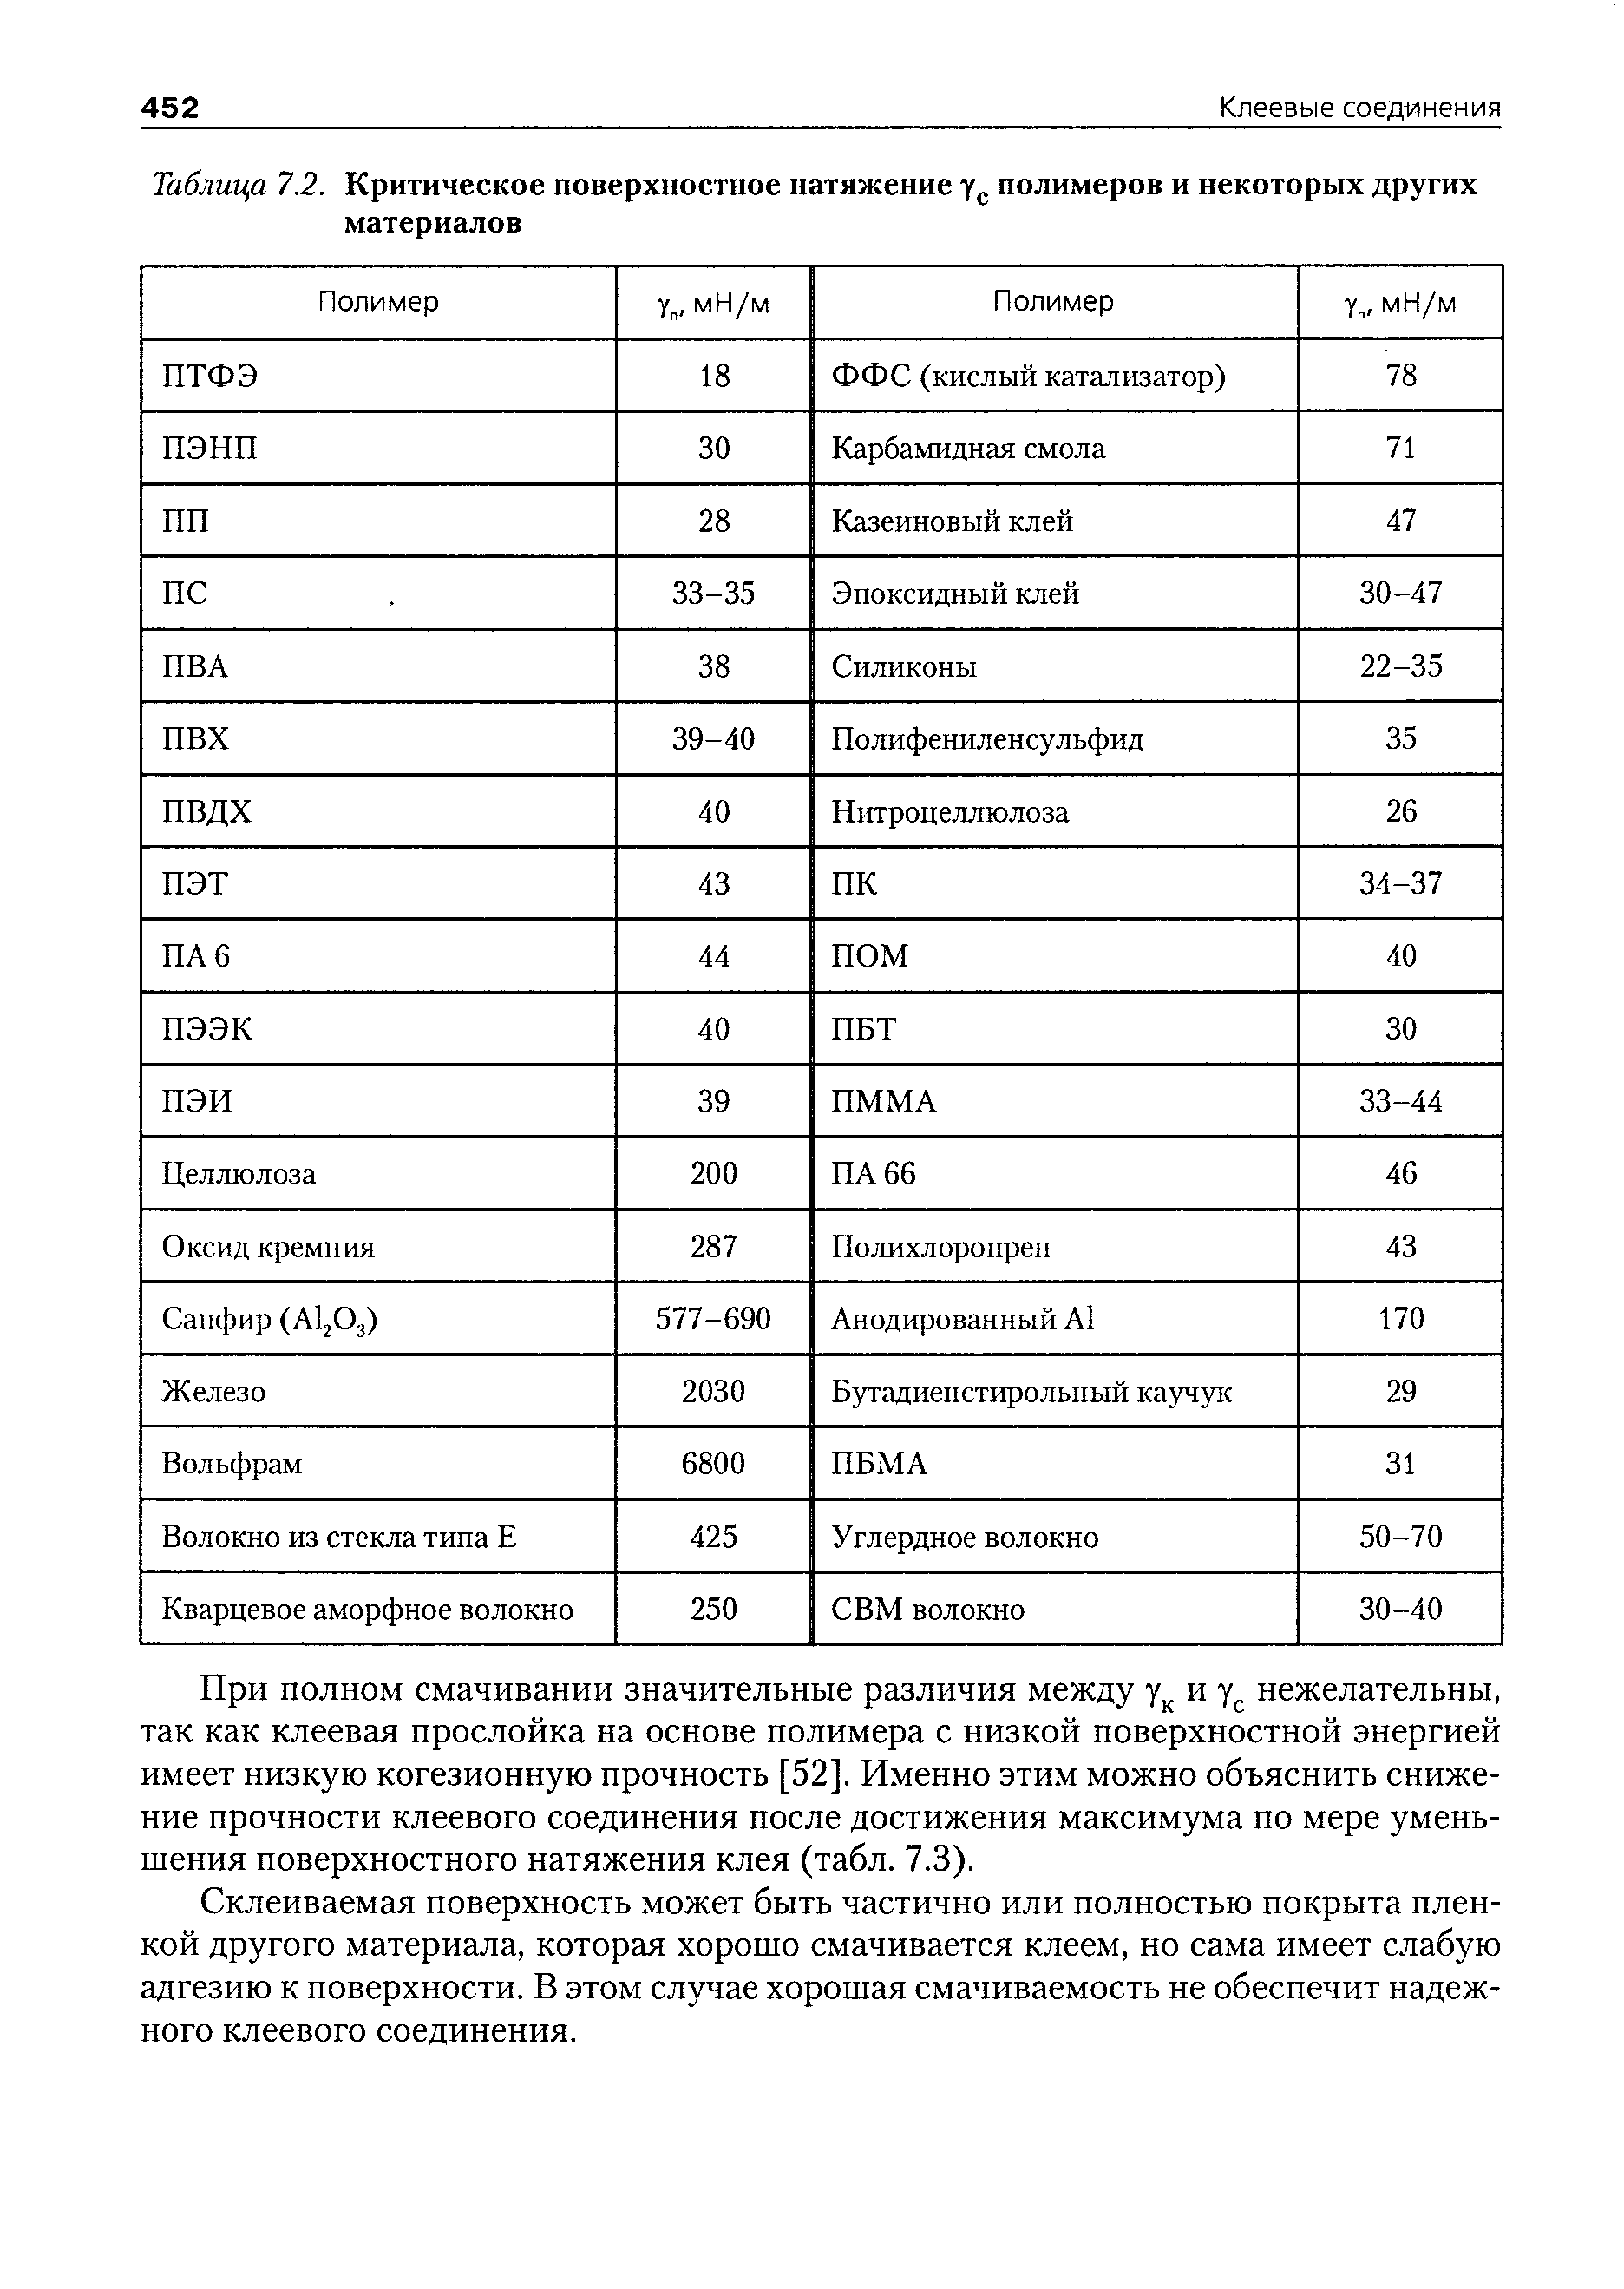 Таблица 7.2. Критическое поверхностное натяжение полимеров и некоторых других материалов
